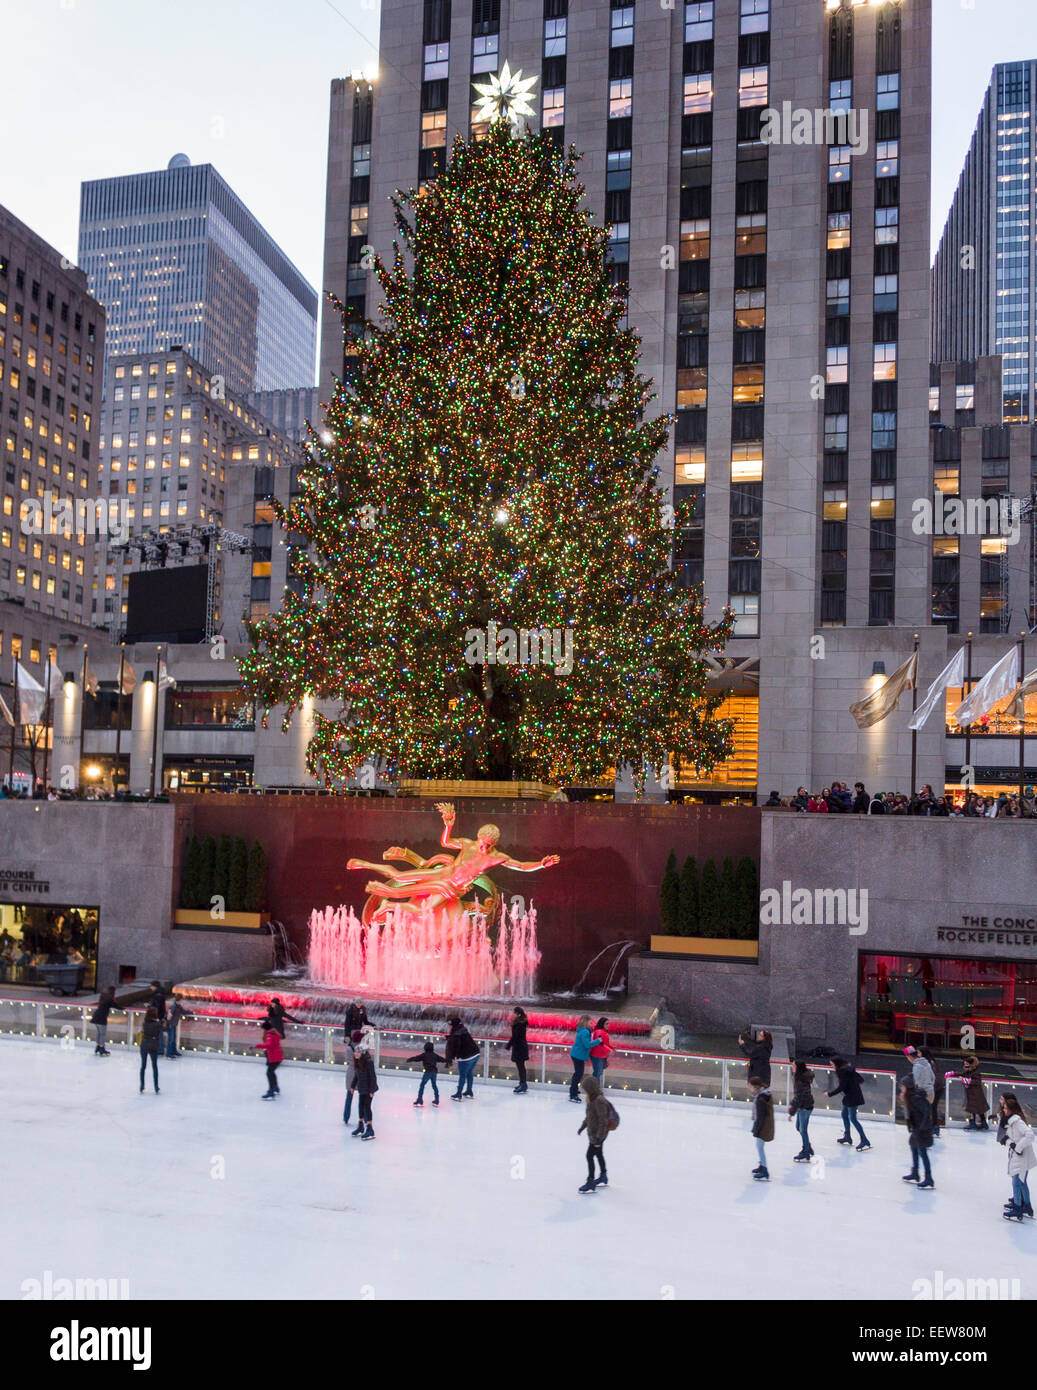 Pattinaggio al di sotto del nuovo albero di Natale illuminato. I pattinatori godendo il pattinaggio sul ghiaccio al Rockefeller Center con le luci delle vacanze Foto Stock